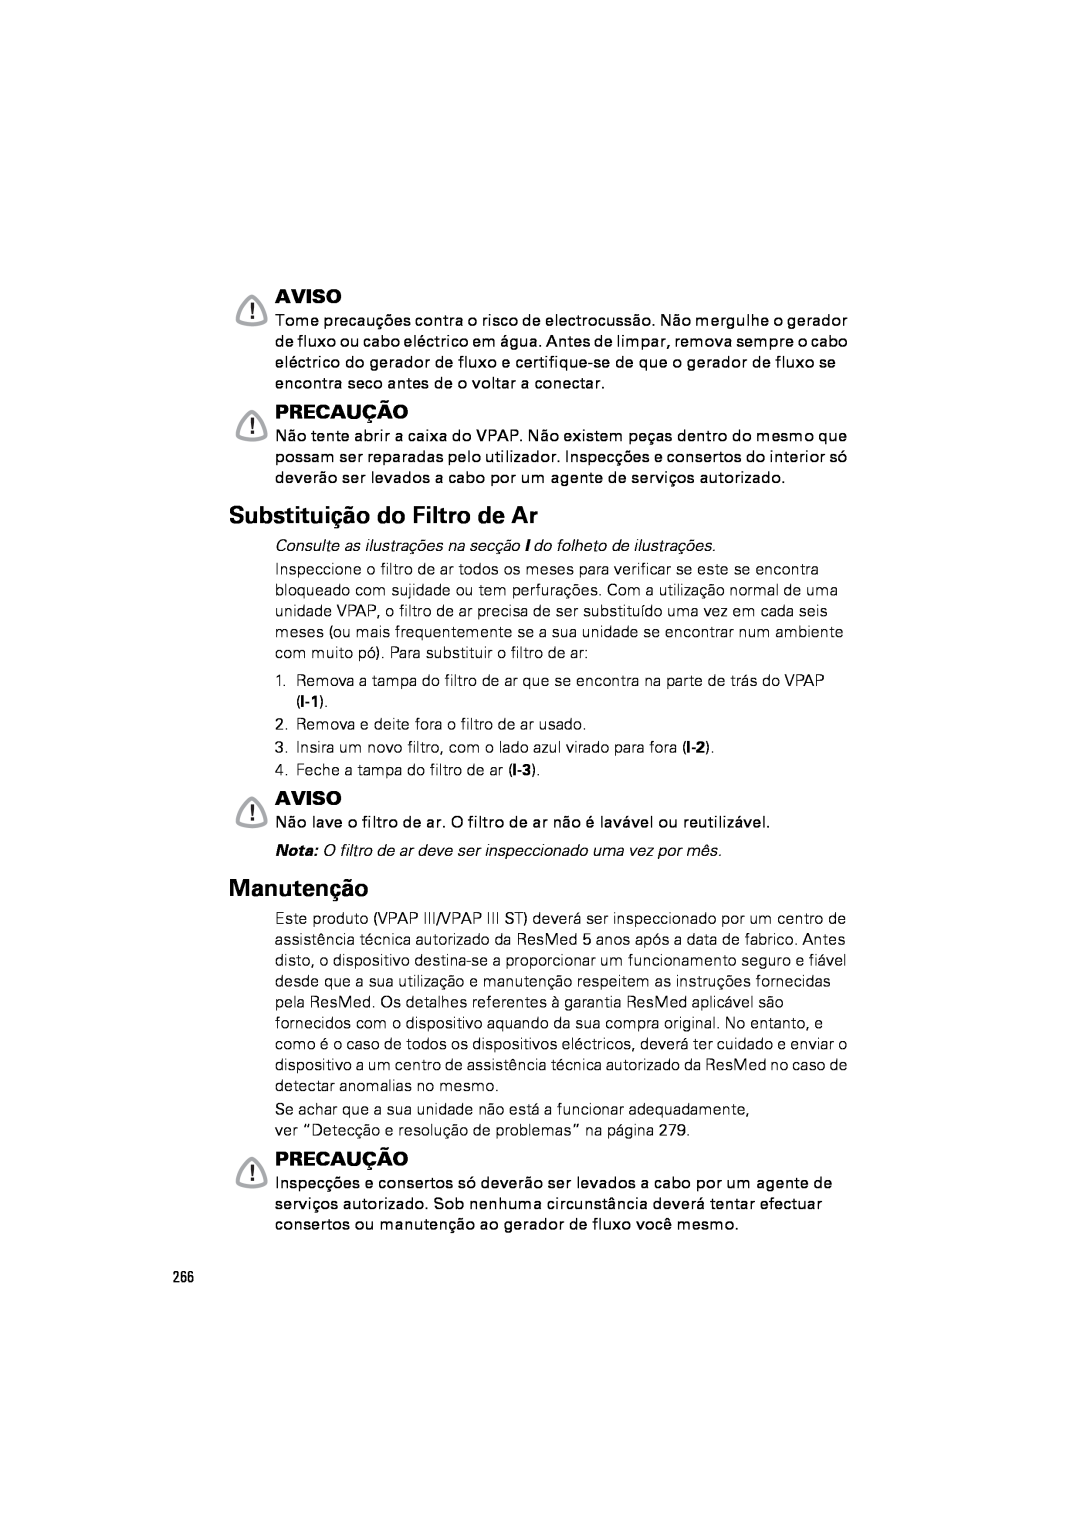 ResMed III & III ST user manual Substituição do Filtro de Ar, Manutenção, Aviso, Precaução 